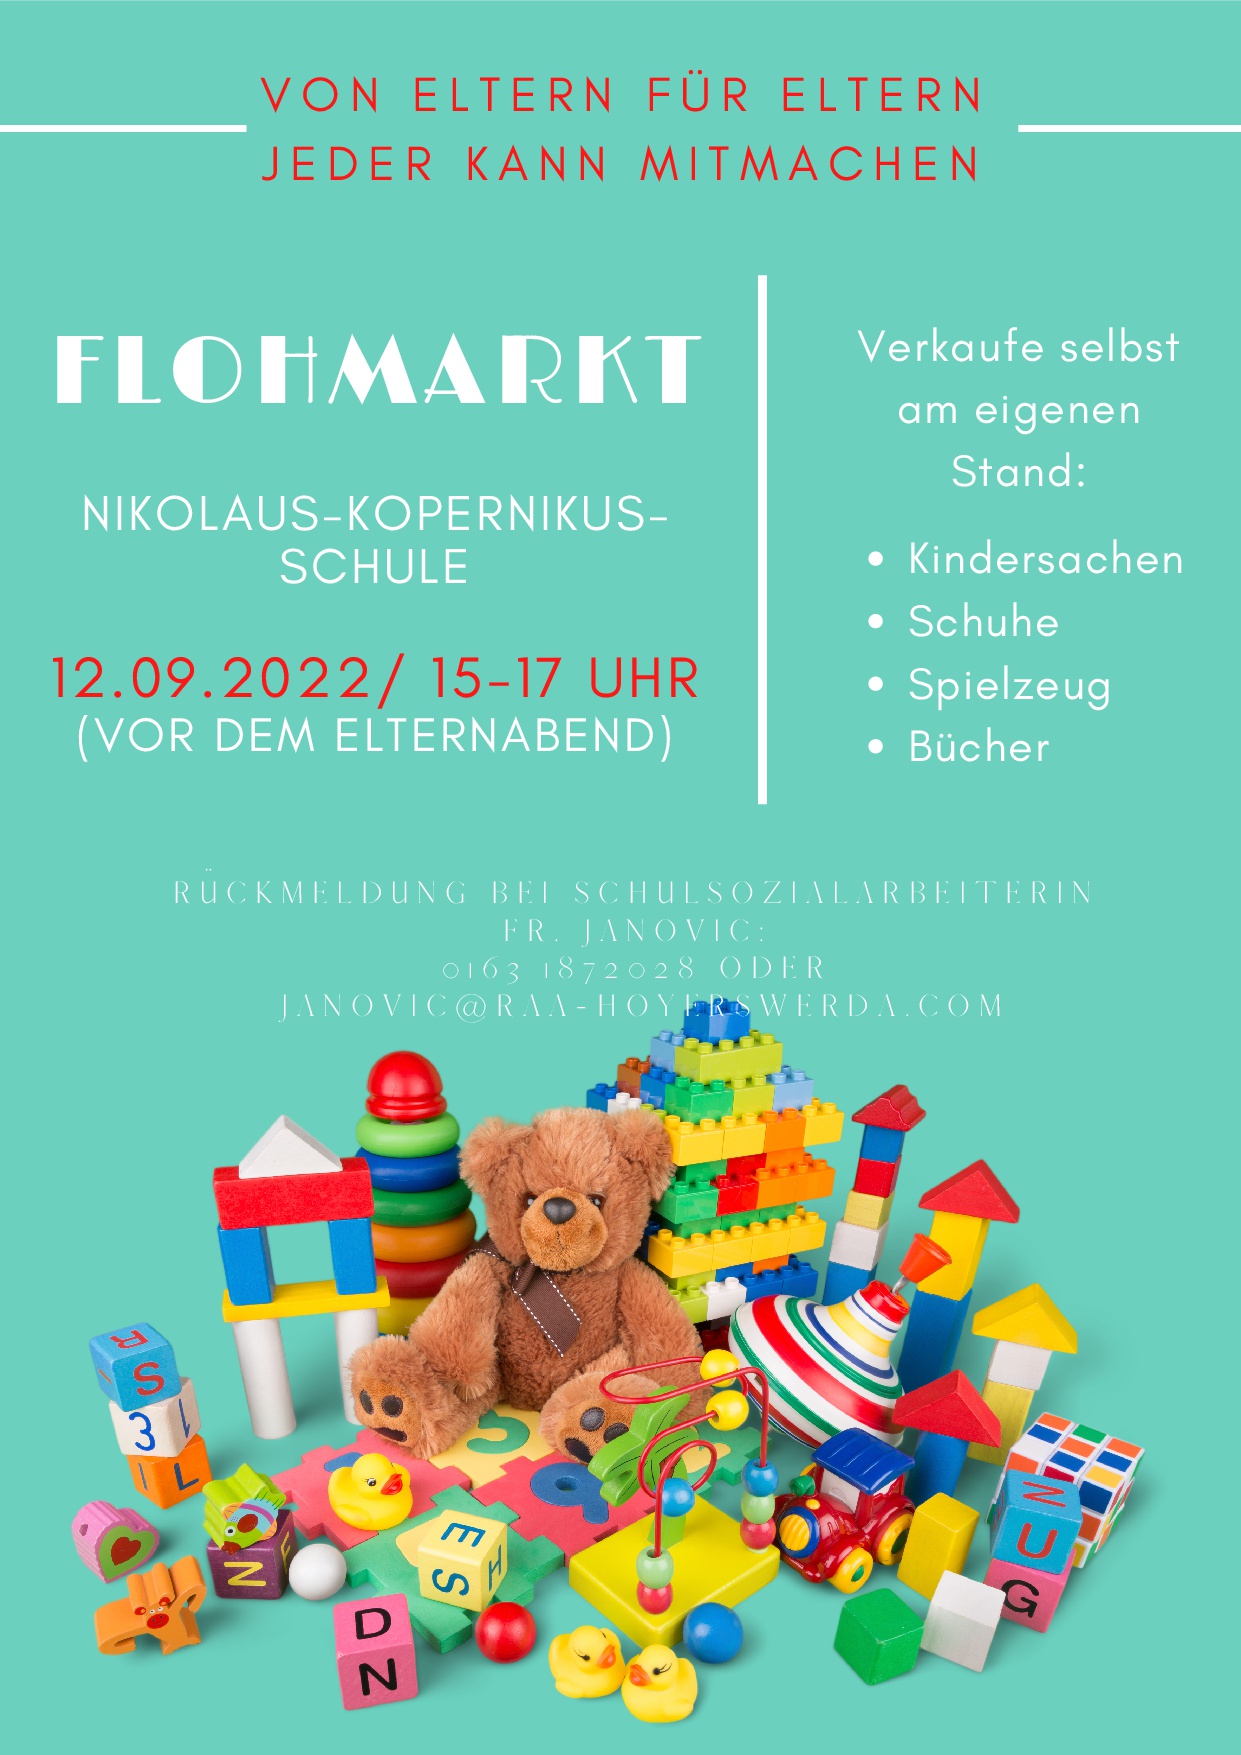 VON ELTERN FÜR ELTERN: Flohmarkt in der Nikolaus-Kopernikus-Schule